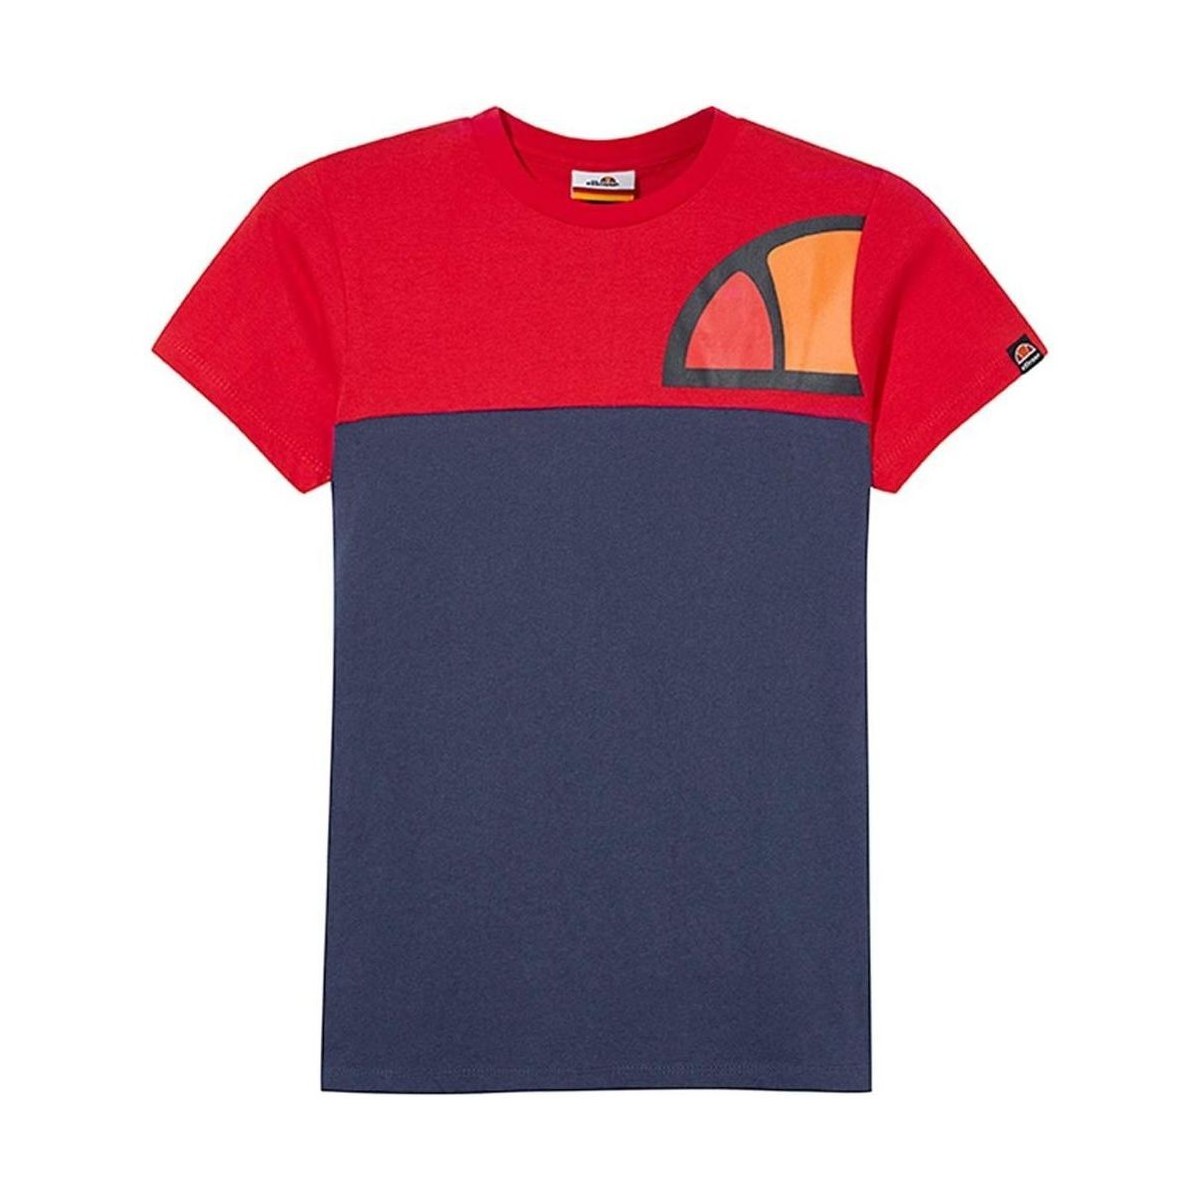 Abbigliamento Bambino T-shirt maniche corte Ellesse  Rosso